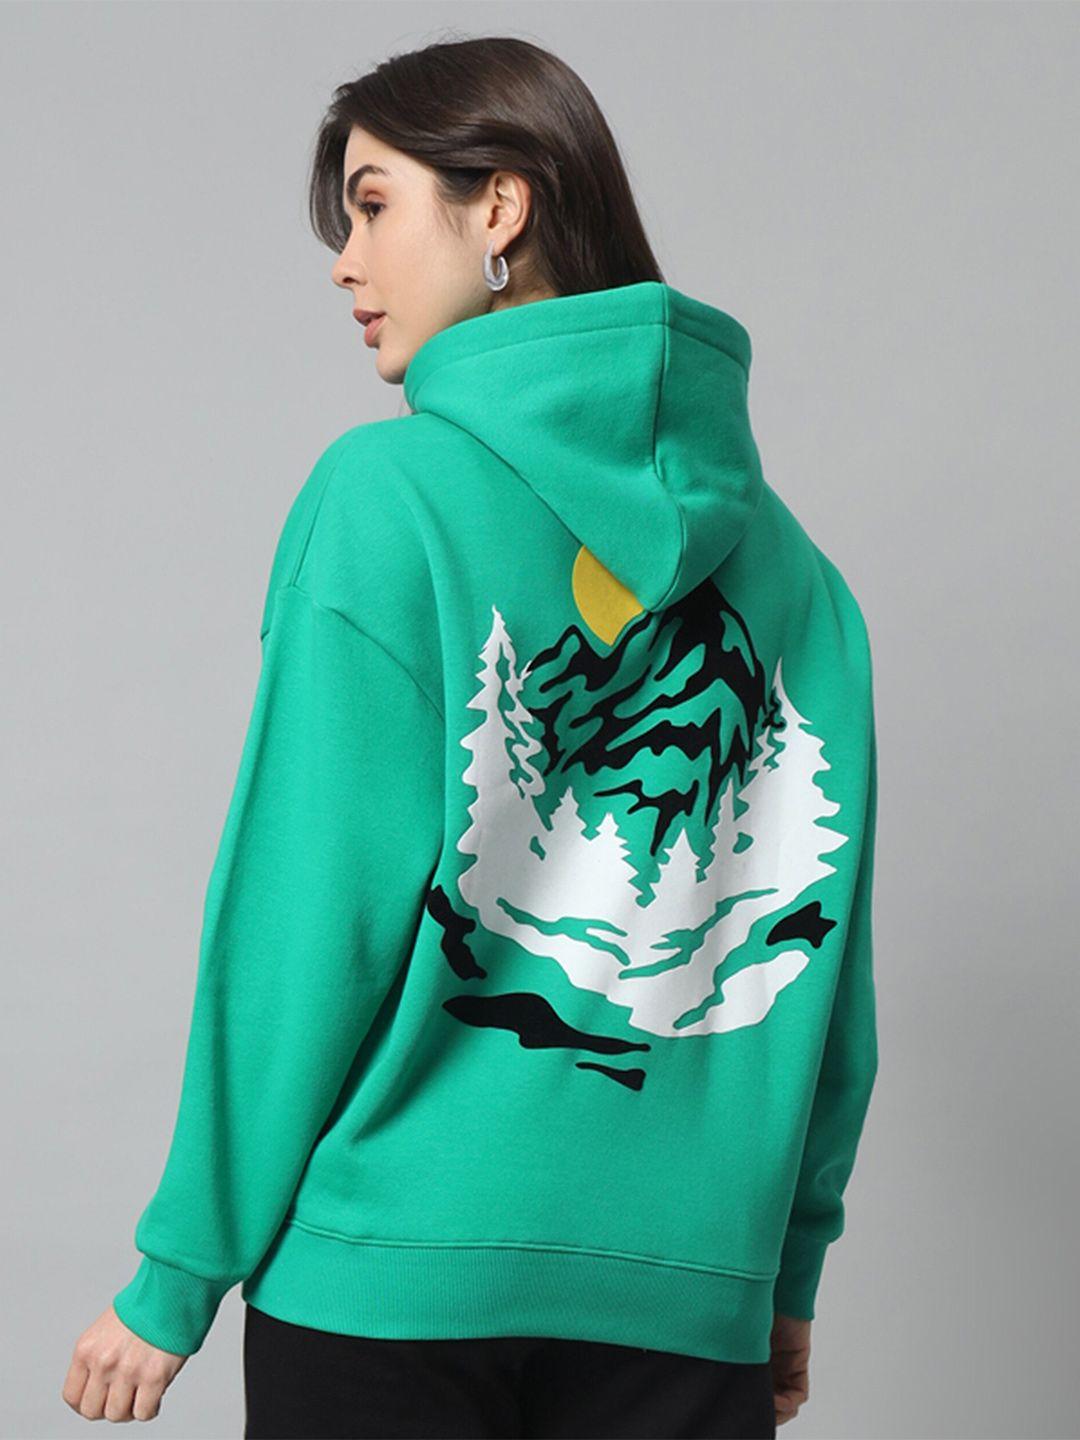 griffel graphic printed hooded fleece sweatshirt